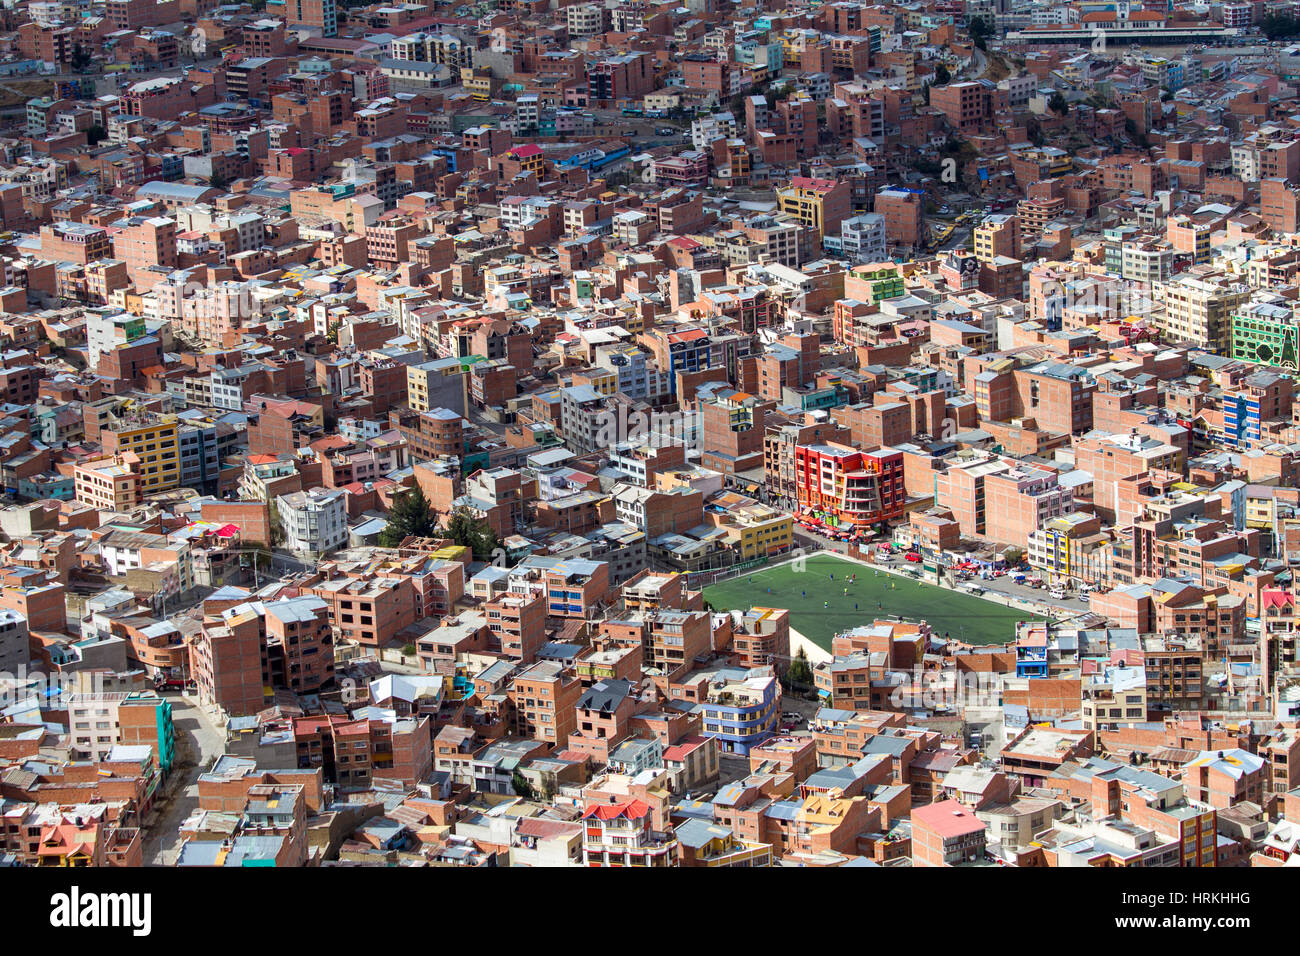 La Paz.     La Paz und El Alto, Viacha, macht sich das bevölkerungsreichste Stadtgebiet in Bolivien, mit einer Bevölkerung von 2,3 Millionen. Stockfoto